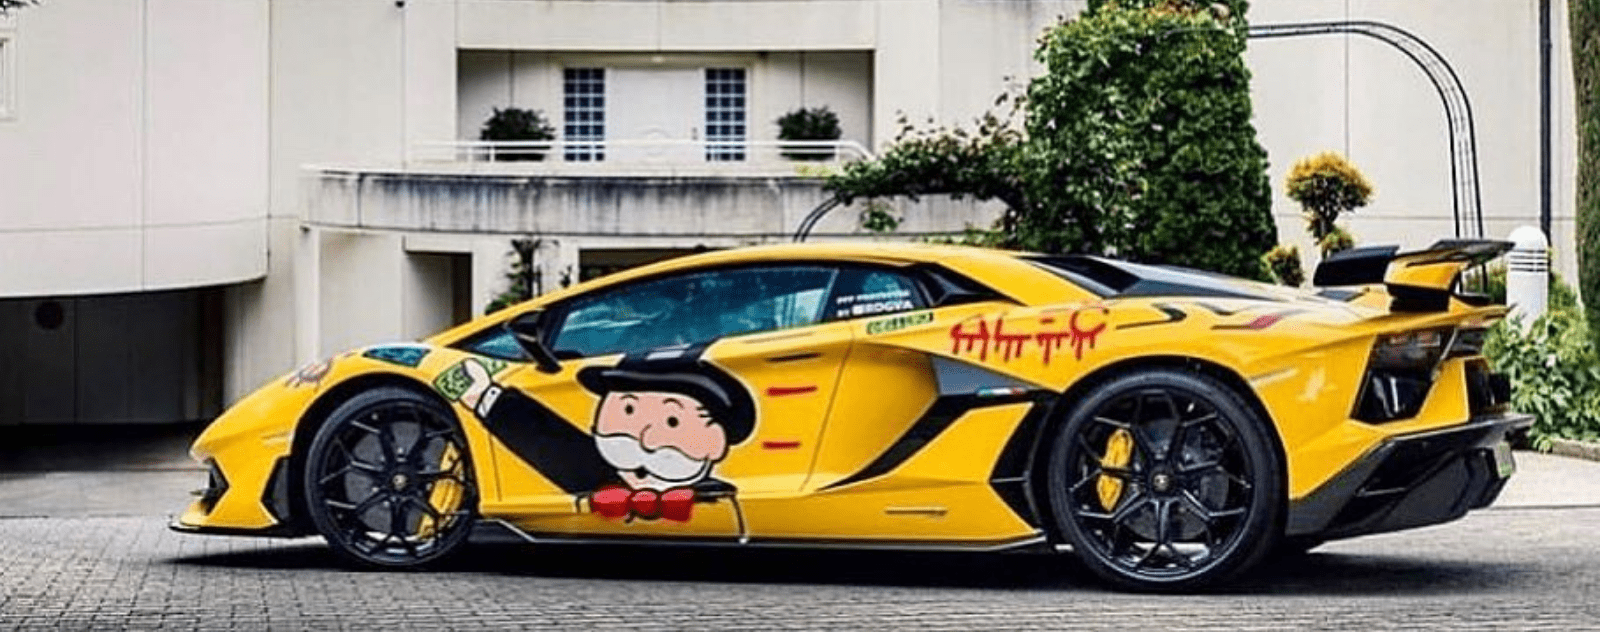 Alec Monopoly Lamborghini